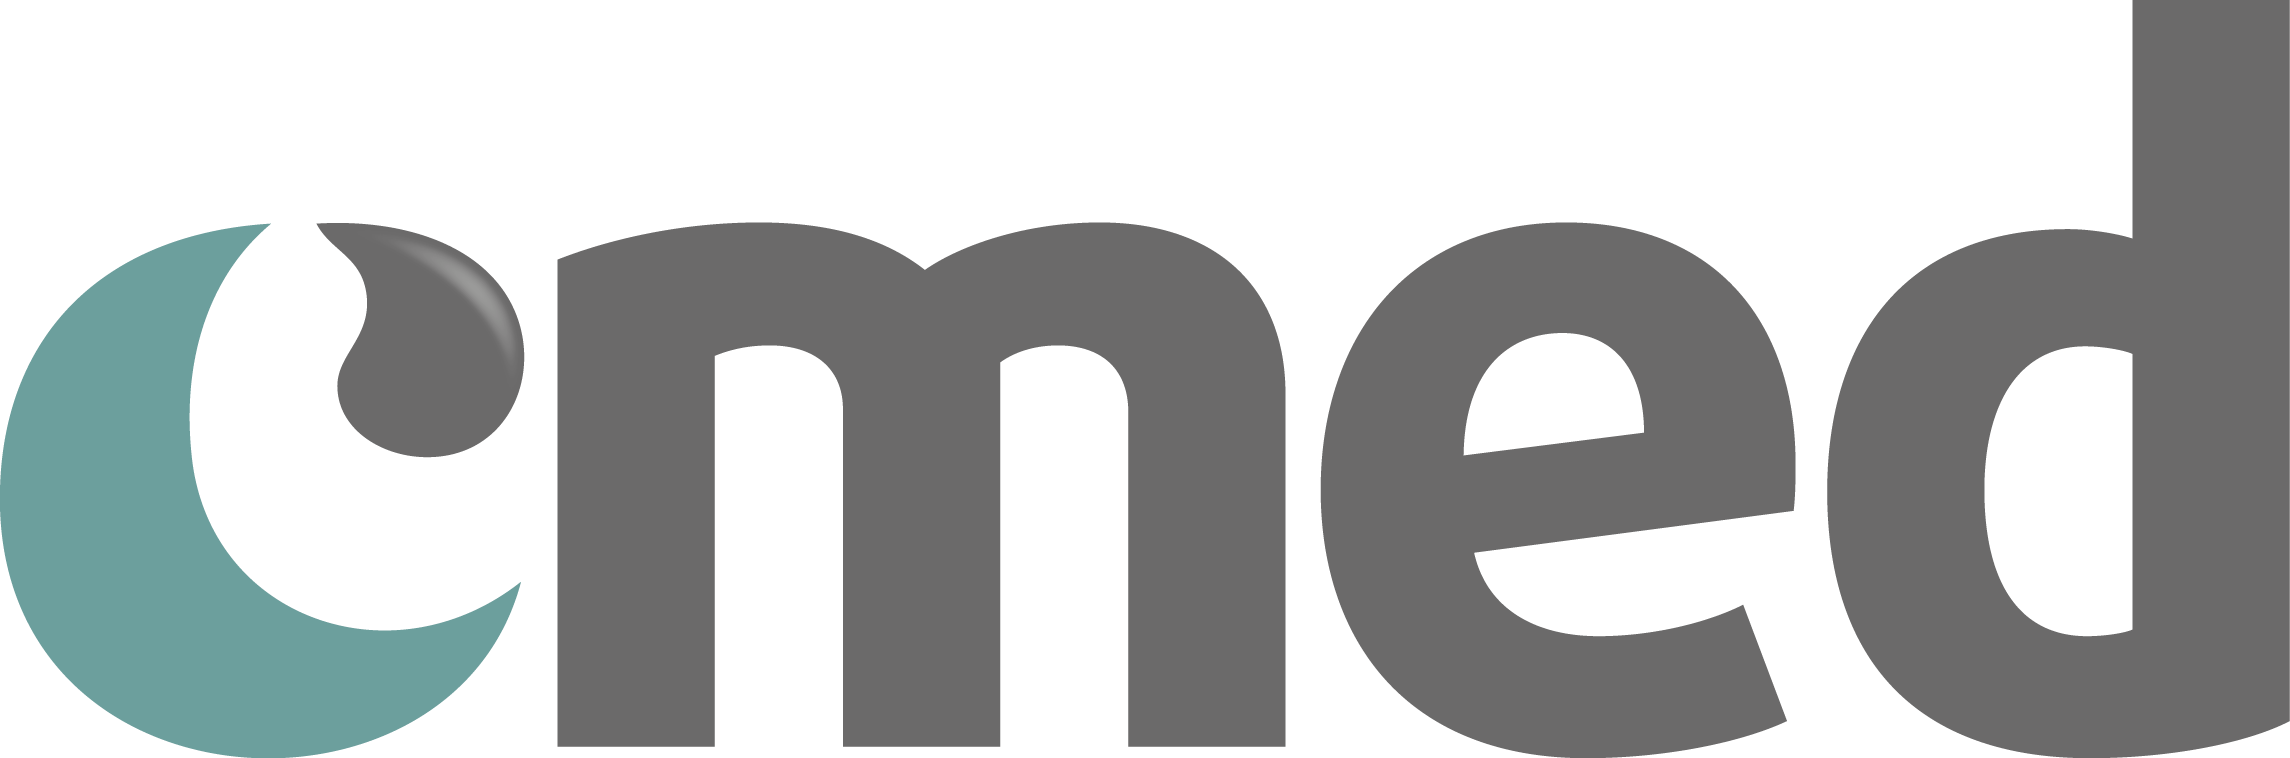 Logo cmed